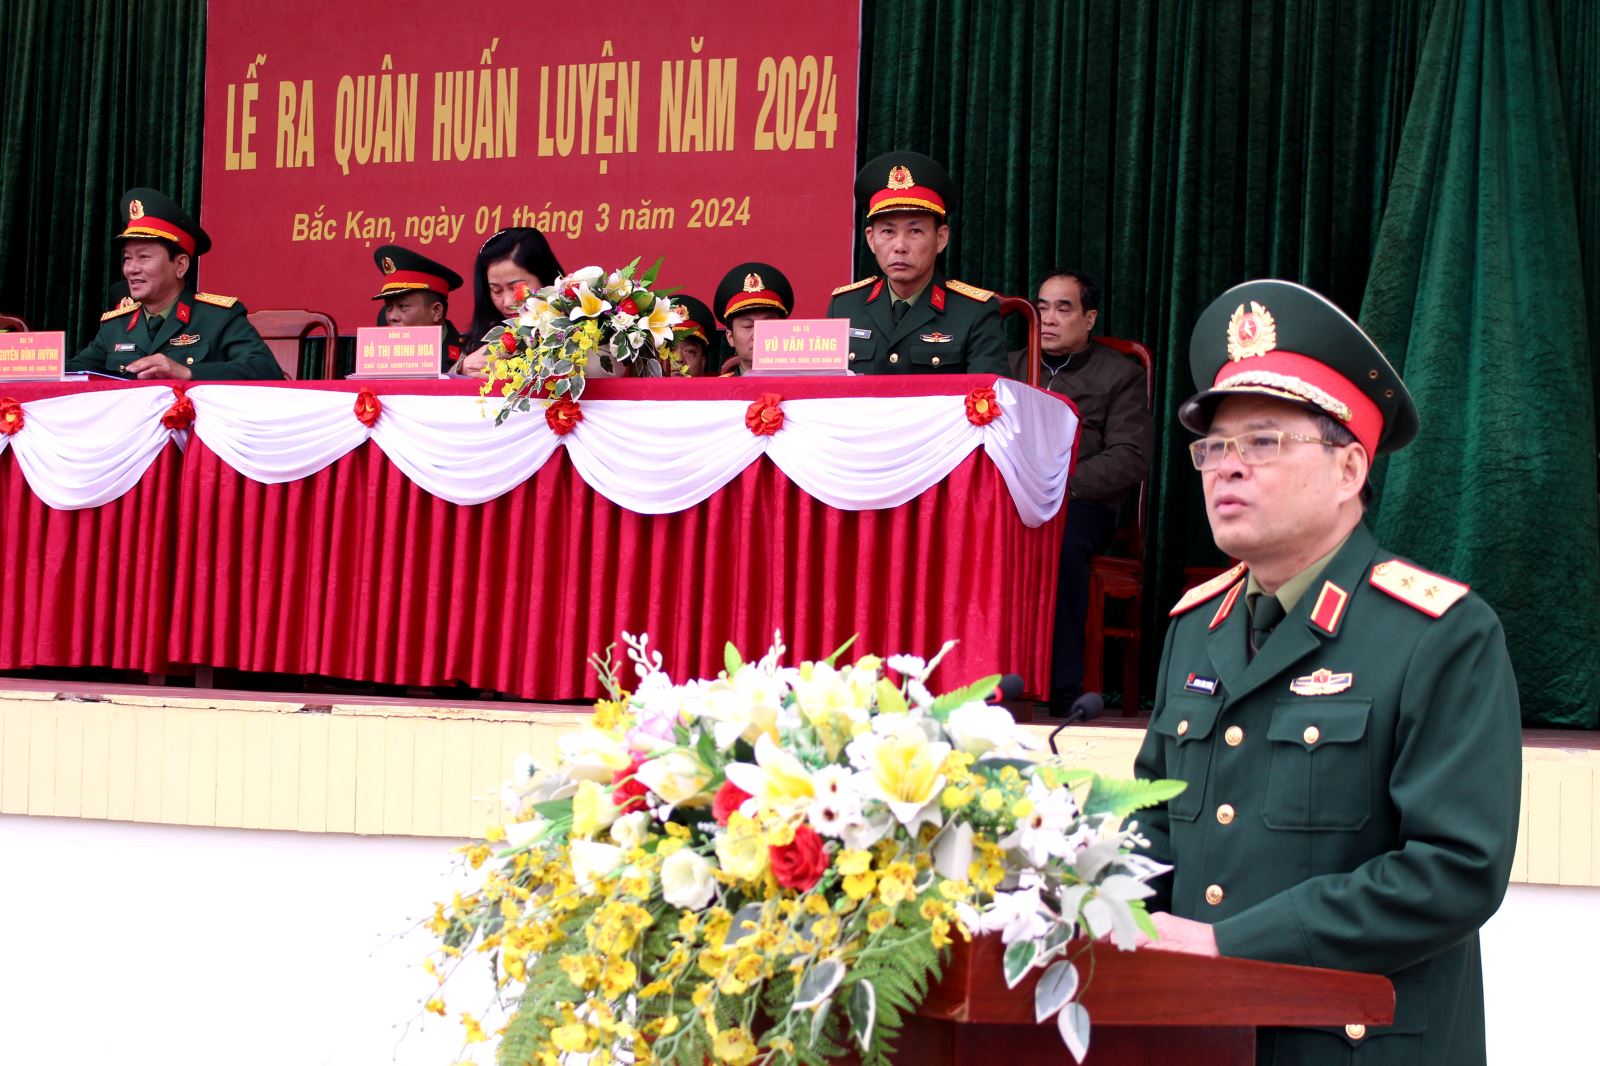 Bộ CHQS tỉnh Bắc Kạn tổ chức lễ ra quân huấn luyện năm 2024